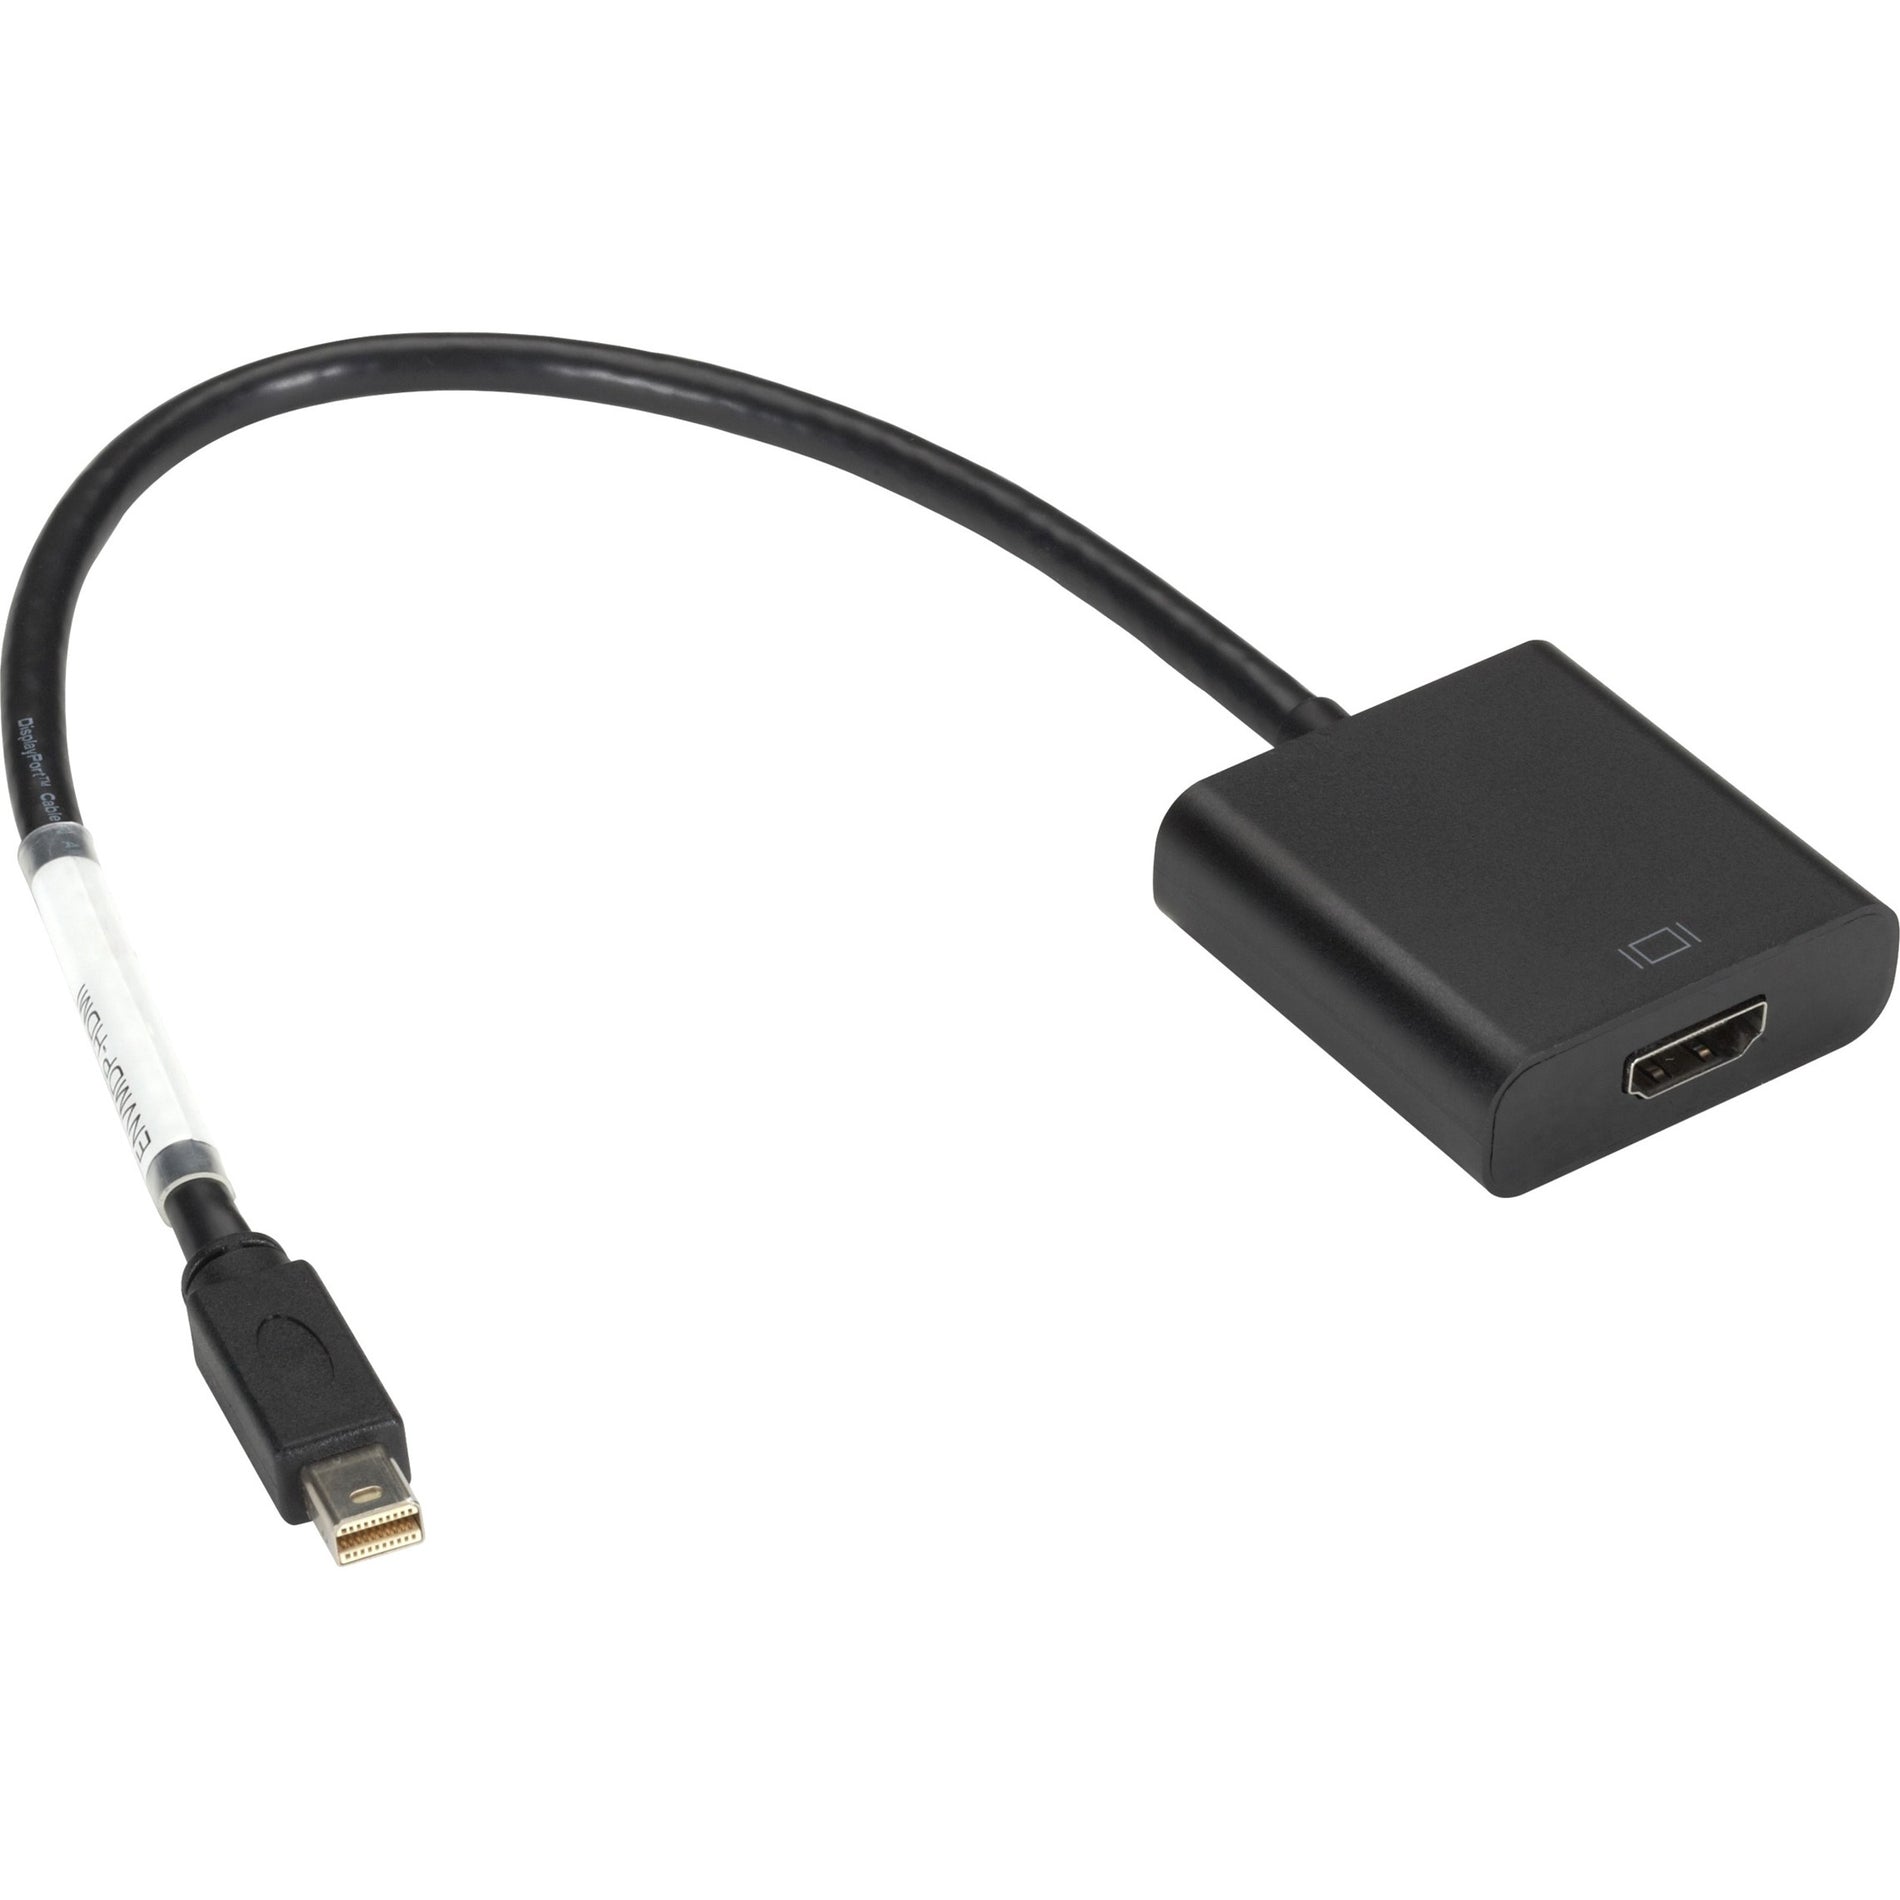 Adaptateur Black Box ENVMDP-HDMI Mini DisplayPort vers HDMI - Mâle/Femelle 8" (20.3 cm) Brancher et Utiliser Taux de Transfert de Données de 5.4 Gbit/s Résolution Supportée de 1920 x 1200